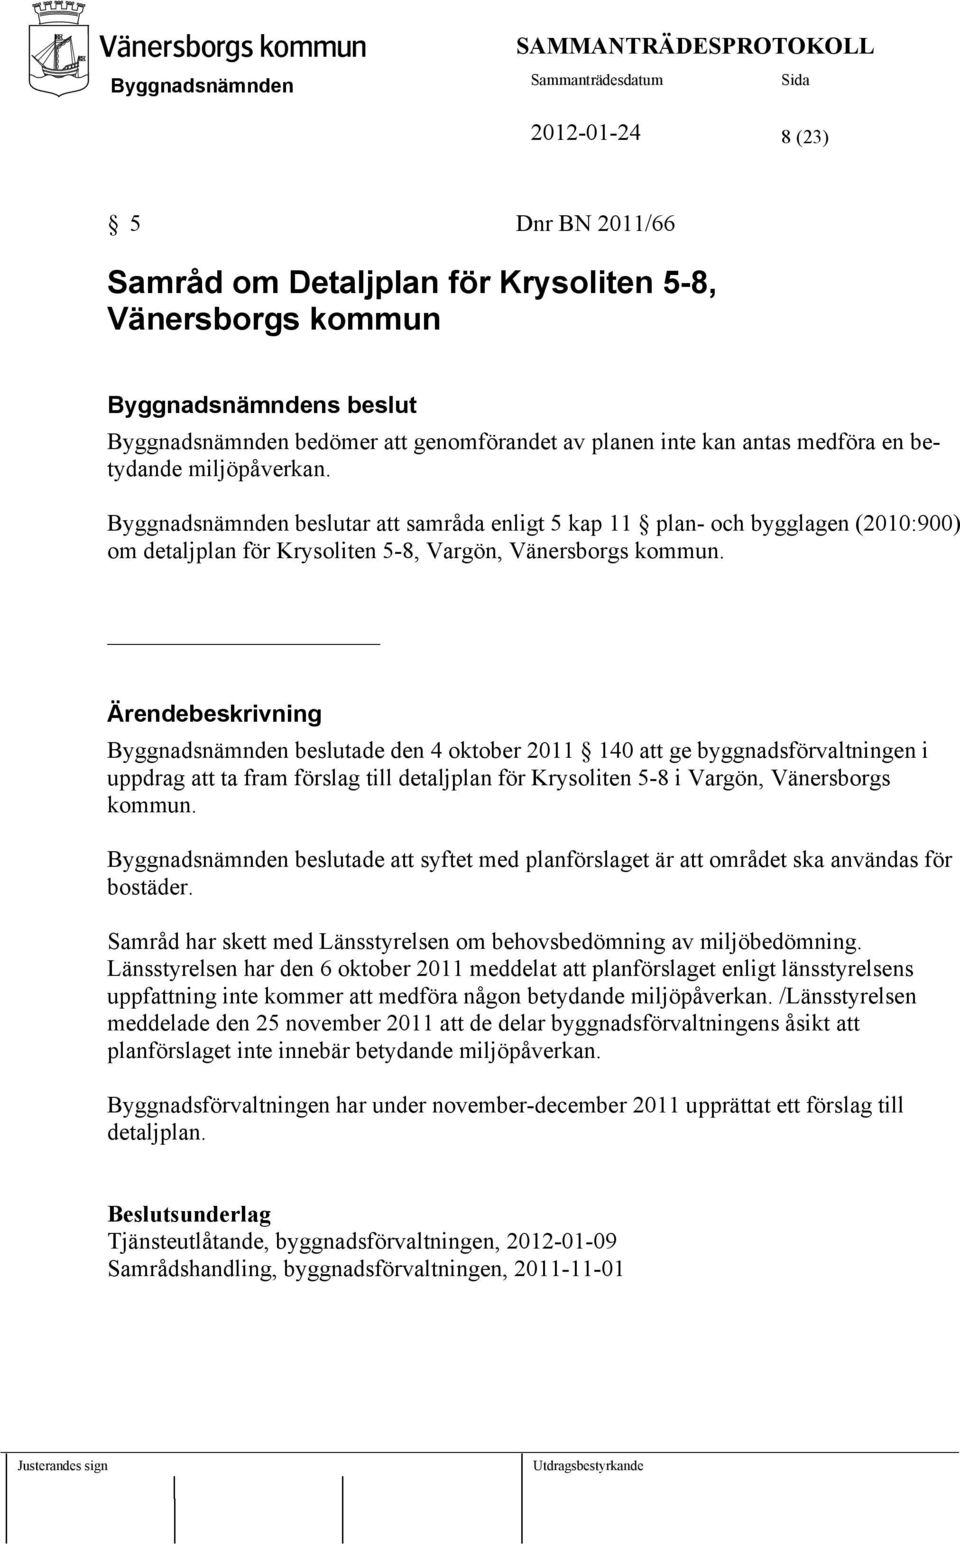 Ärendebeskrivning beslutade den 4 oktober 2011 140 att ge byggnadsförvaltningen i uppdrag att ta fram förslag till detaljplan för Krysoliten 5-8 i Vargön, Vänersborgs kommun.